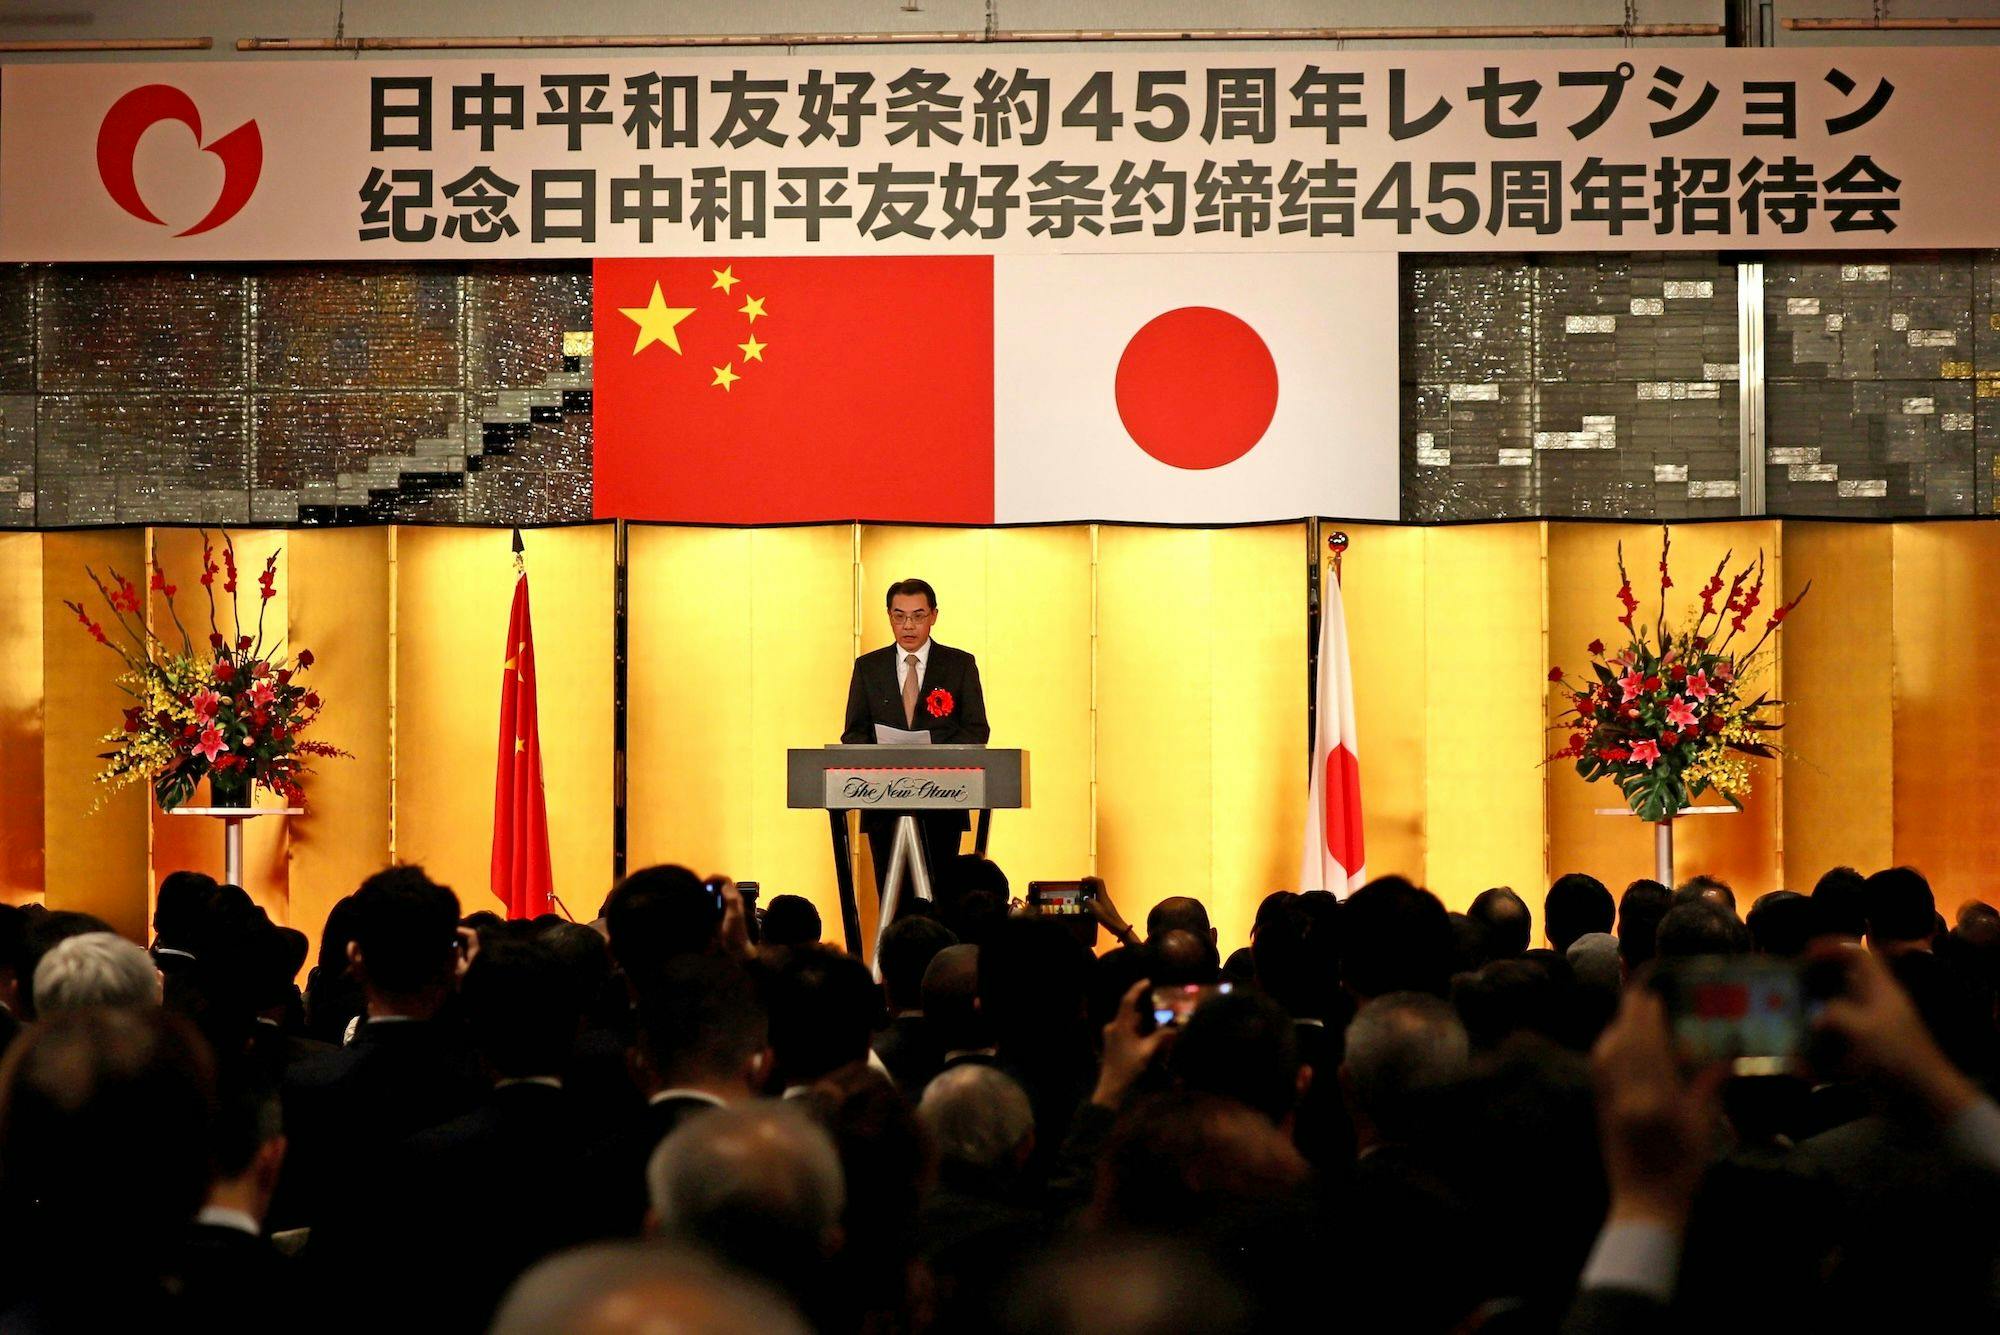 Der chinesische Botschafter in Japan, Wu Jianghao, spricht während eines Empfangs zum 45. Jahrestag der Unterzeichnung des chinesisch-japanischen Vertrags über Frieden und Freundschaft in Tokio, Japan